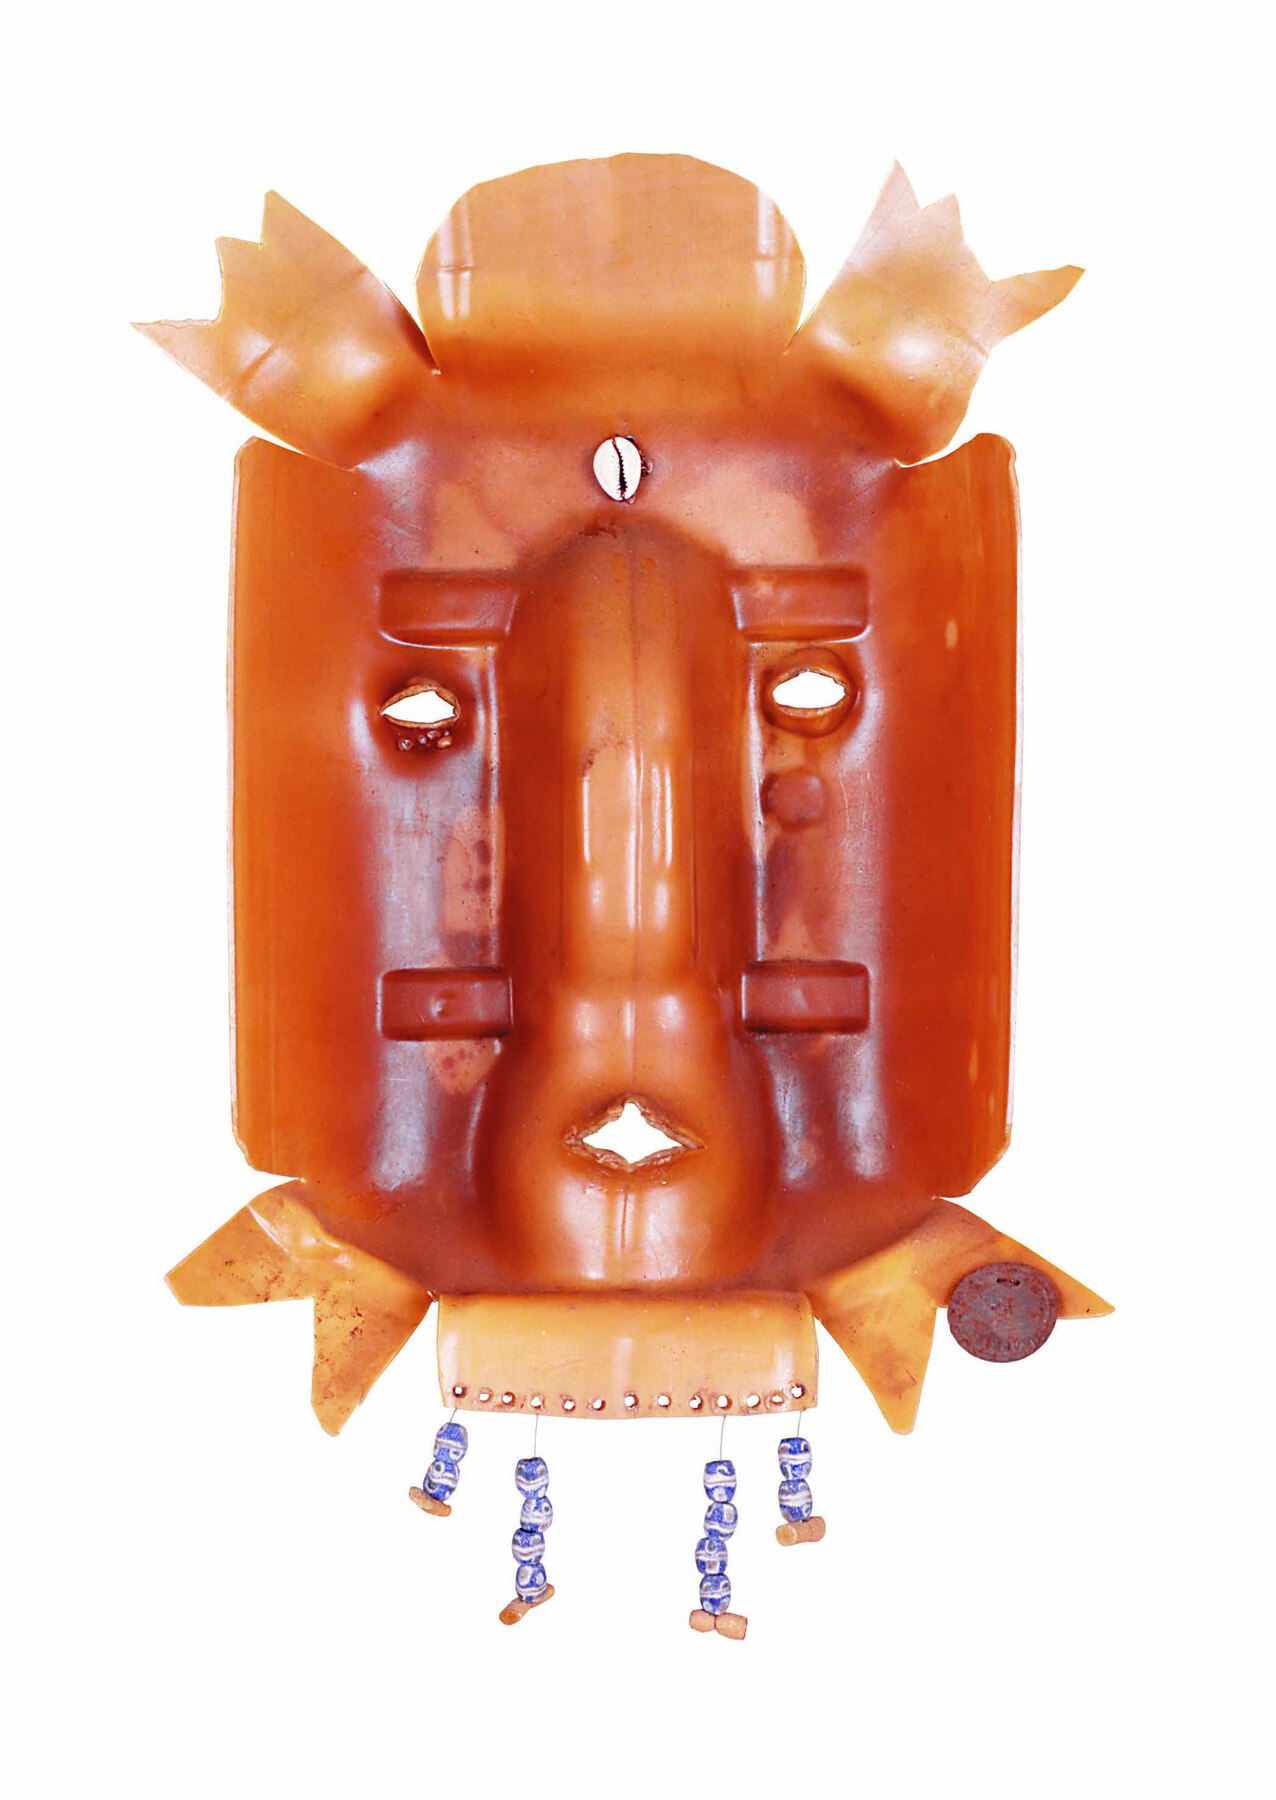 Escultura. Máscara  criada por partes de garrafa plástica, aberta, em tons de marrom-claro. Há aberturas para os olhos e a boca. Na parte inferior, dependurados, há adornos feitos de contas e búzios.